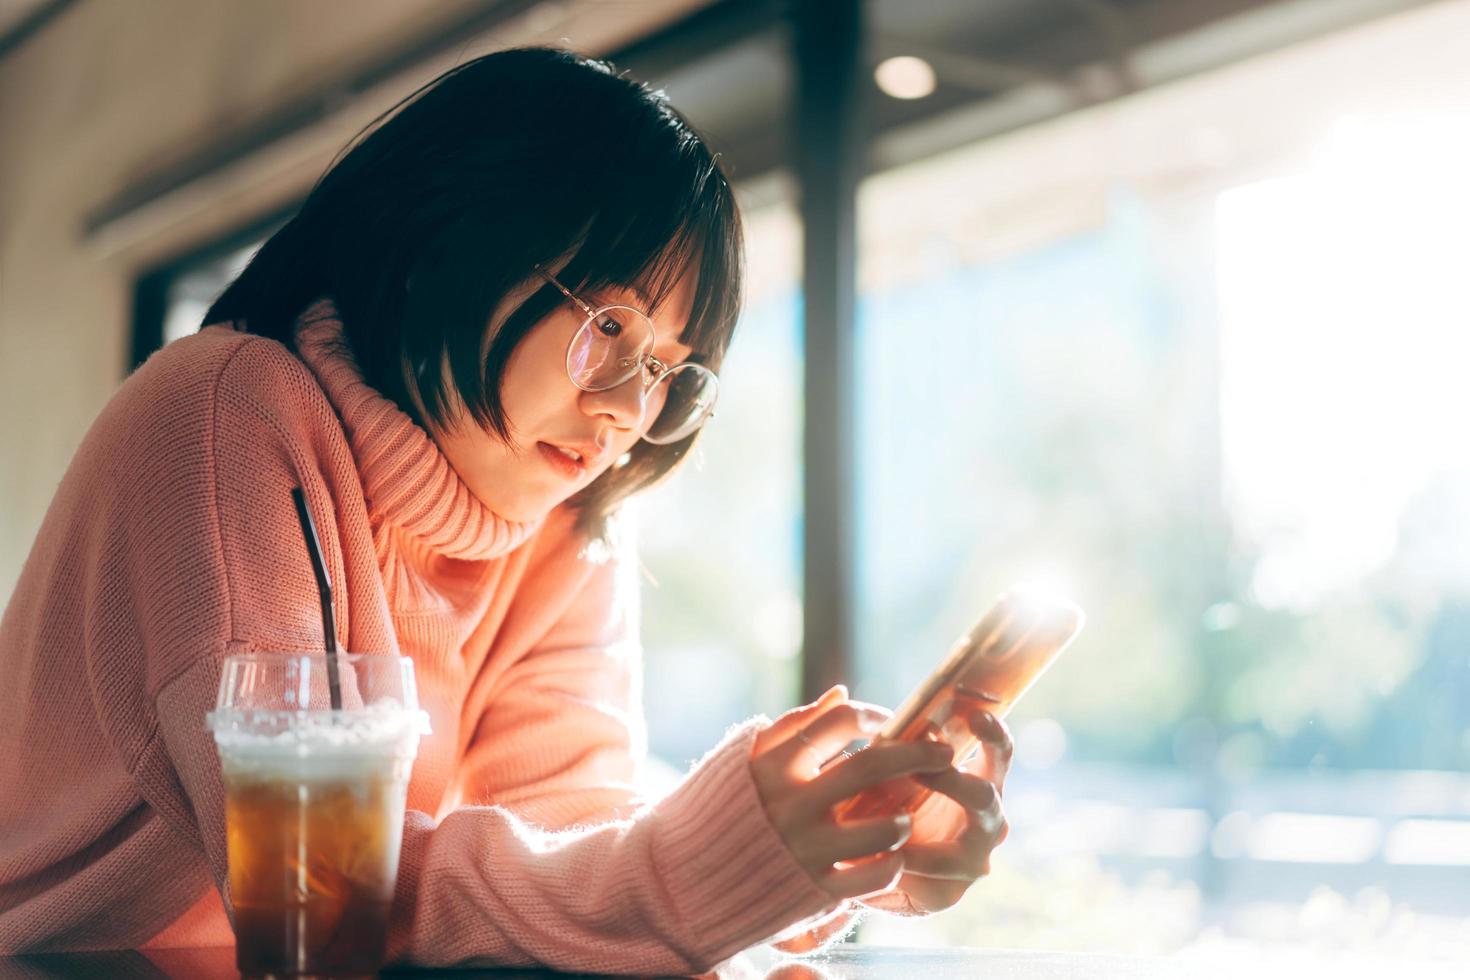 jonge volwassen aziatische vrouw die mobiele telefoon gebruikt voor sociale media-achtergrond met raam en warm zonlicht in de winter foto